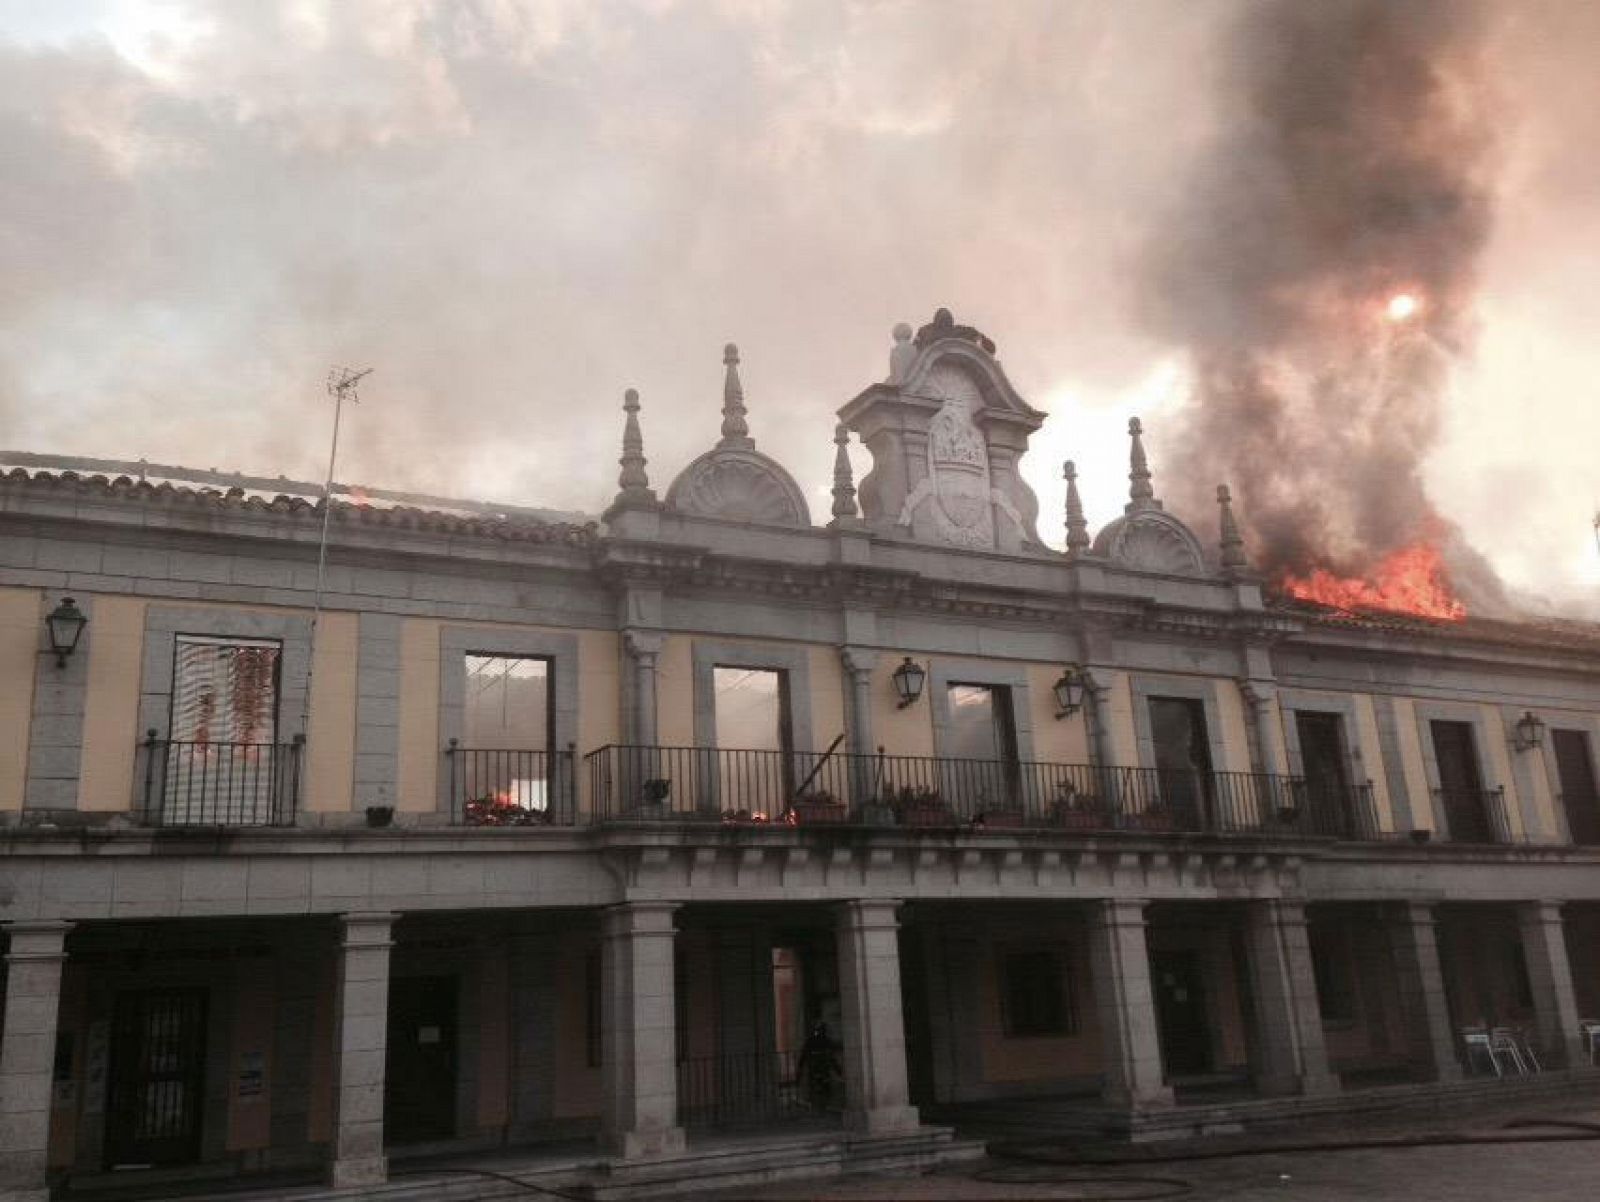 El salón de plenos del municipio madrileño de Brunete ha ardido en un incendio que ha afectado además a dos viviendas aledañas.